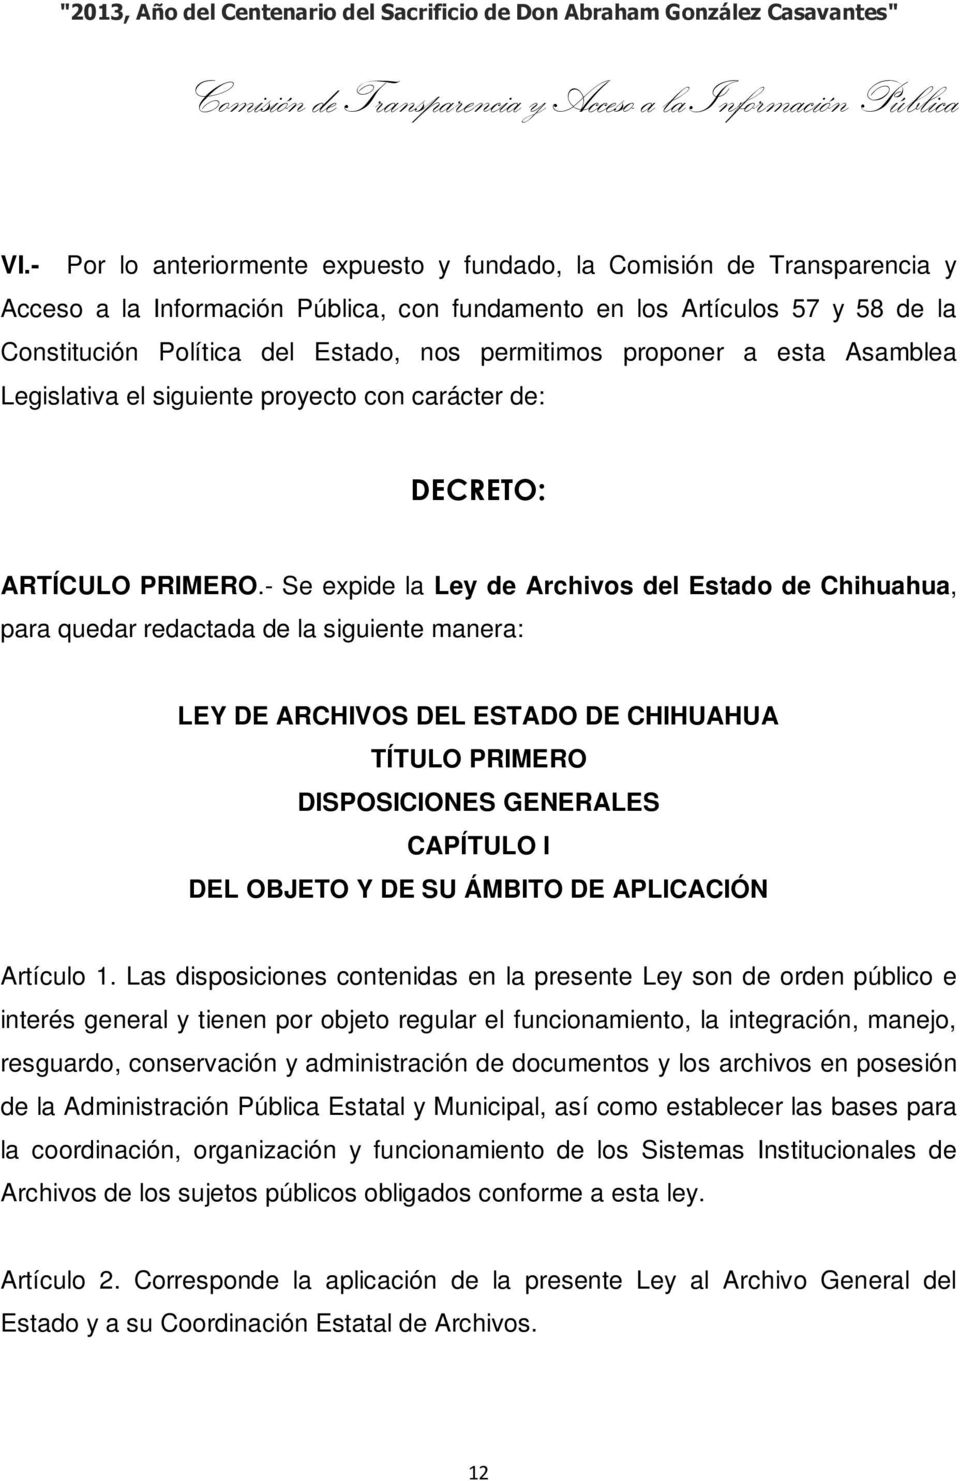 - Se expide la Ley de Archivos del Estado de Chihuahua, para quedar redactada de la siguiente manera: LEY DE ARCHIVOS DEL ESTADO DE CHIHUAHUA TÍTULO PRIMERO DISPOSICIONES GENERALES CAPÍTULO I DEL